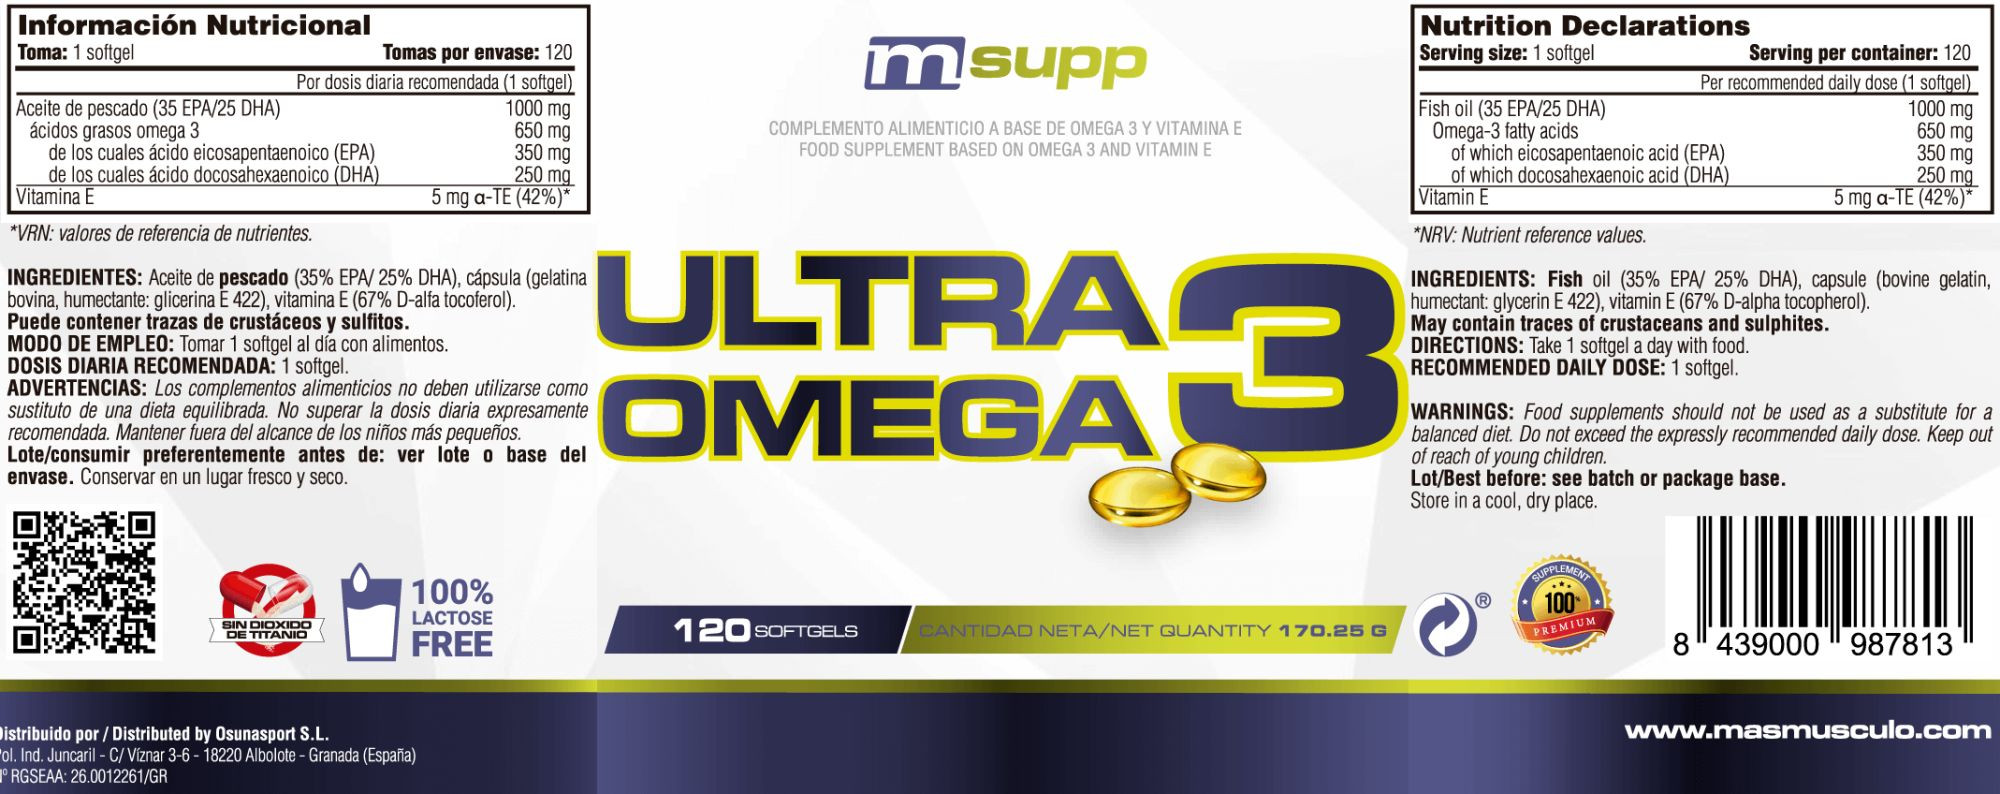 Ultra Omega 3 - 120 Softgels De Mm Supplements  MKP